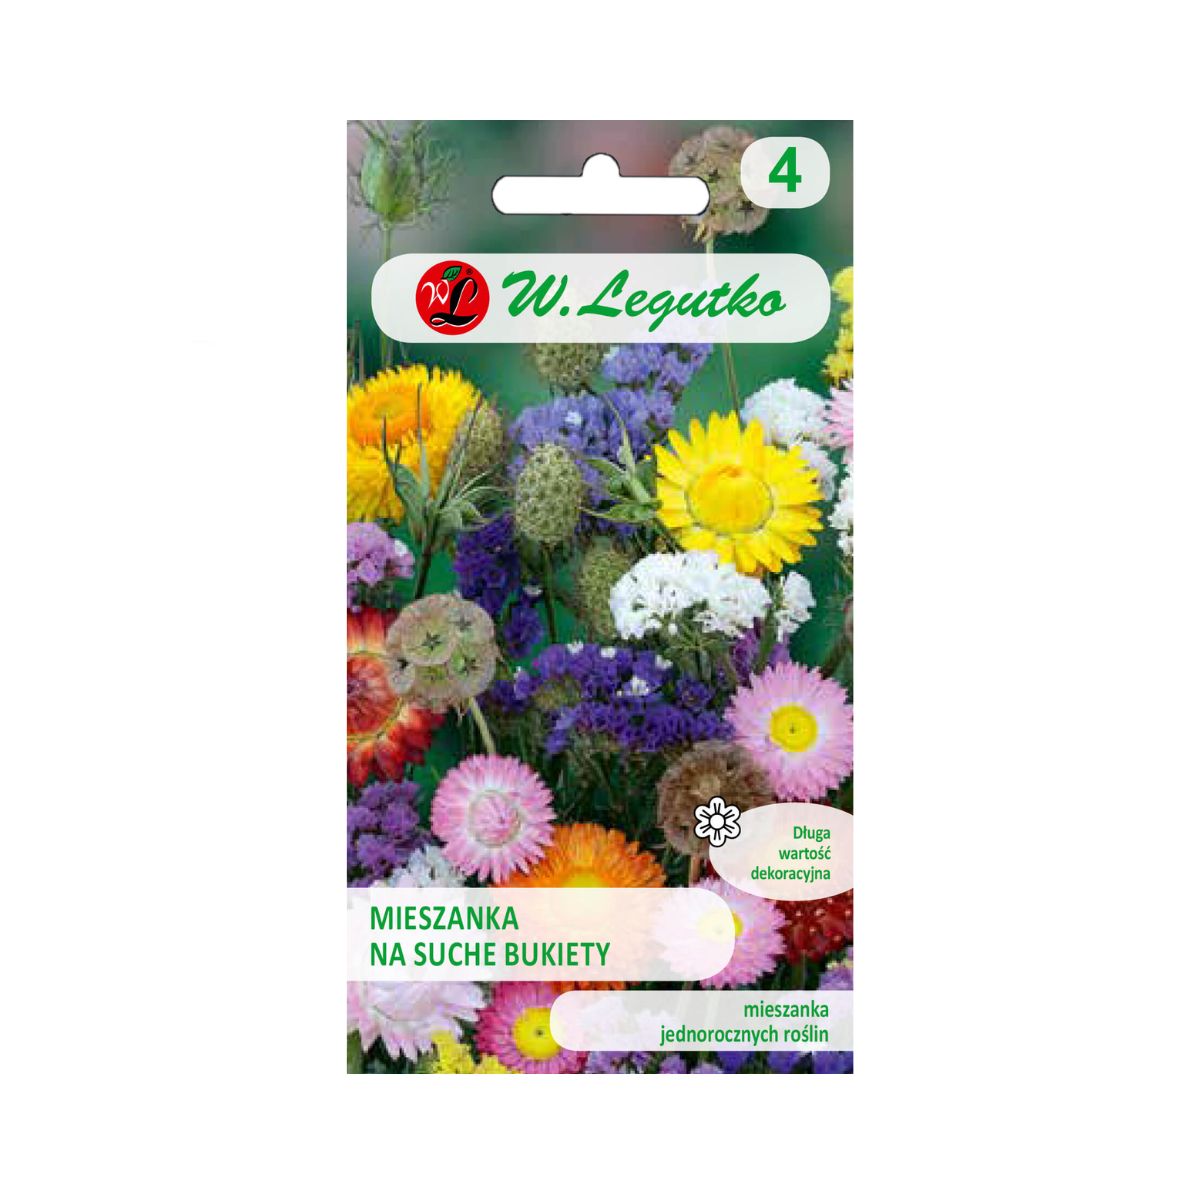 Seminte flori - Seminte amestec de flori uscate pentru buchete, 0,8 gr, LEGUTKO, hectarul.ro